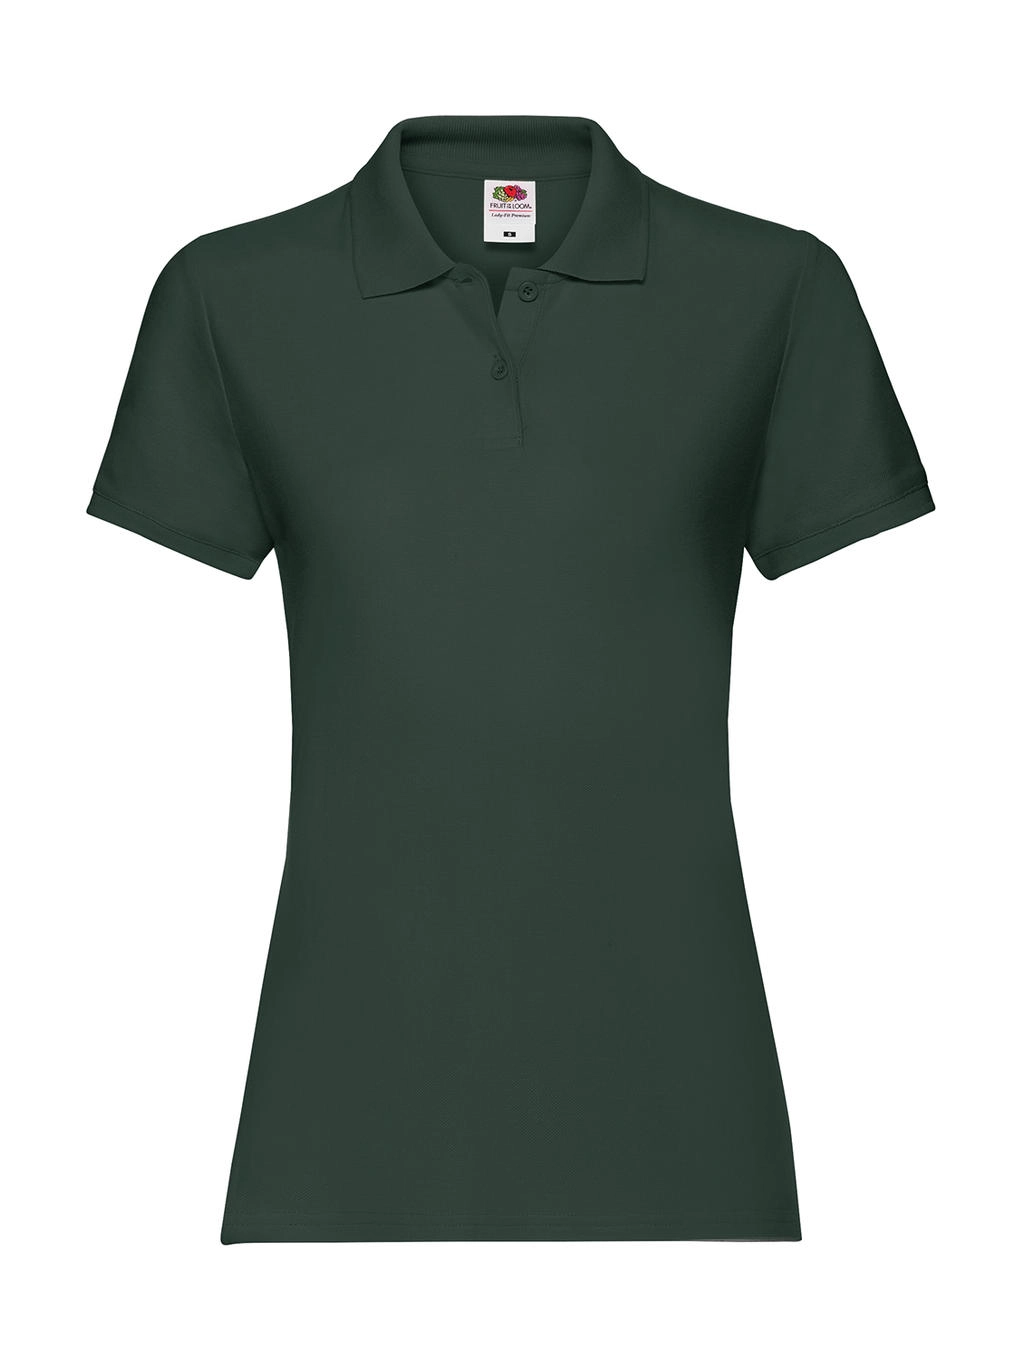 Ladies` Premium Polo zum Besticken und Bedrucken in der Farbe Forest Green mit Ihren Logo, Schriftzug oder Motiv.